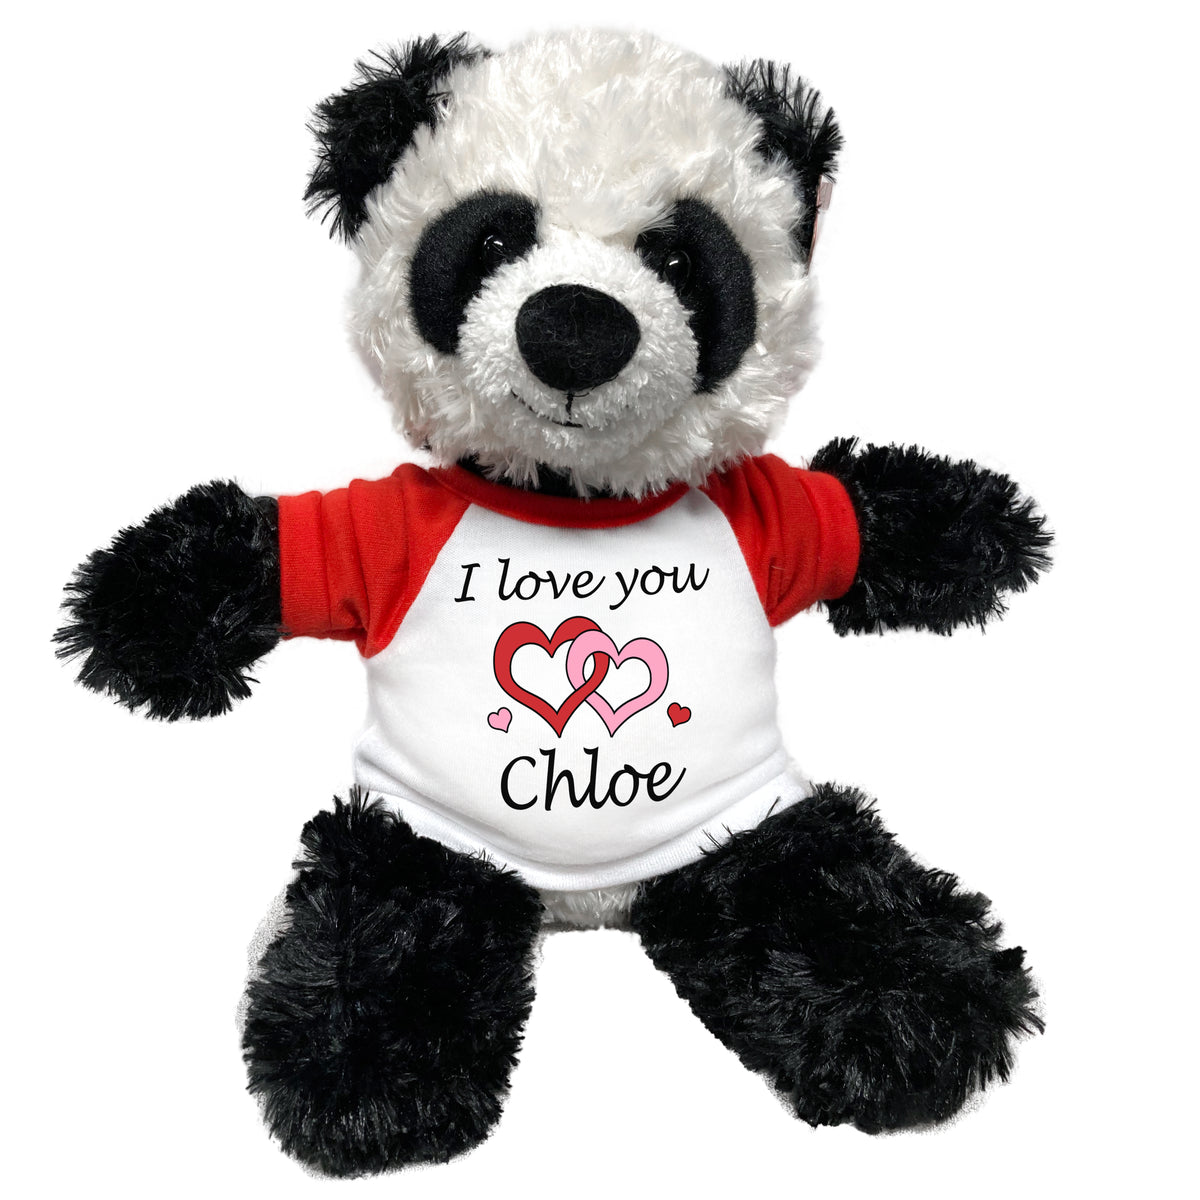 Décoration personnalisée en bois Panda - Print Your Love